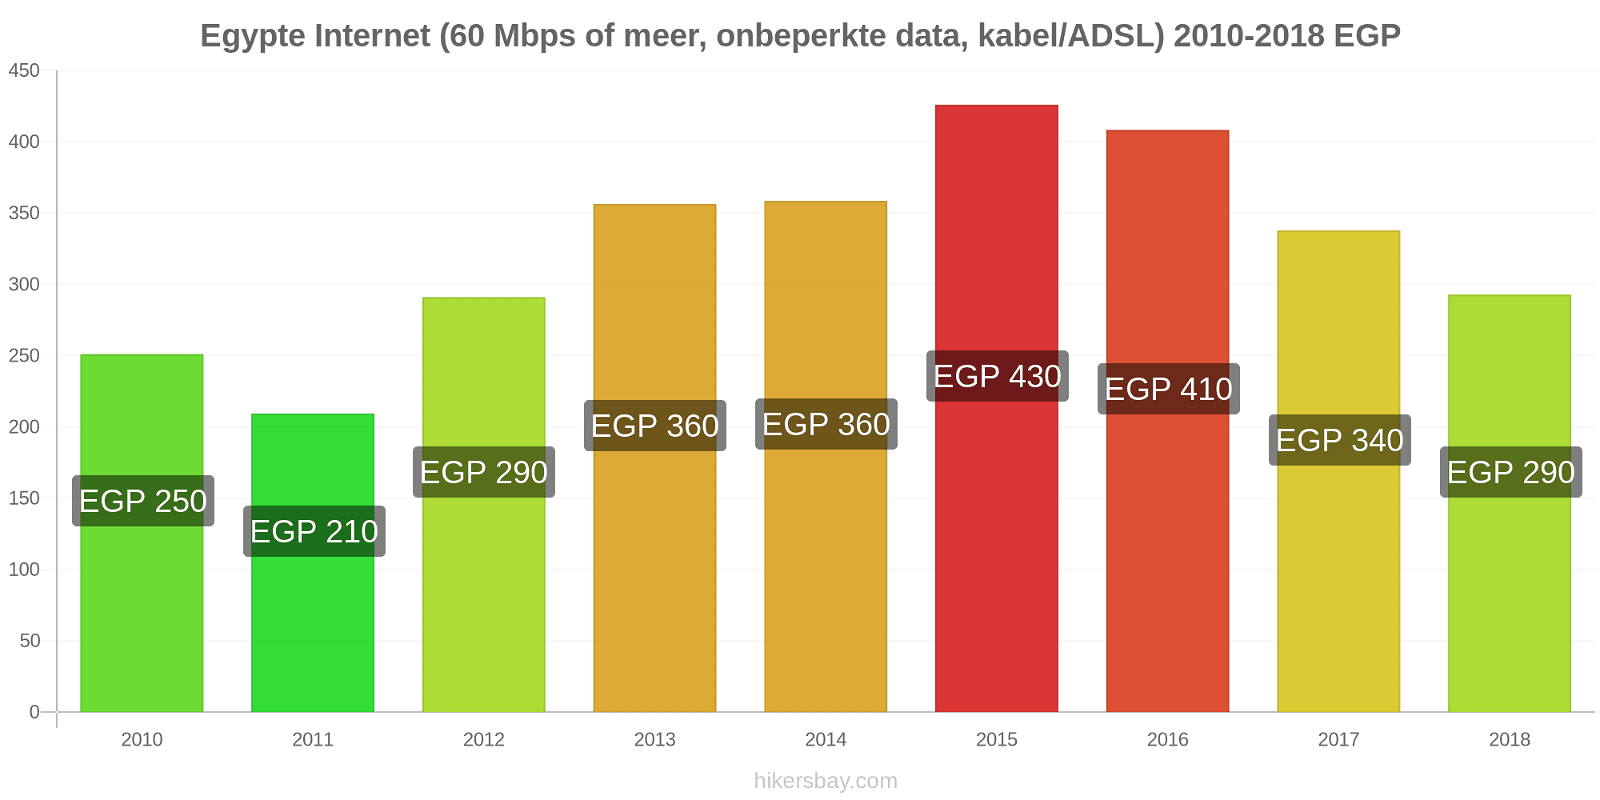 Egypte prijswijzigingen Internet (60 Mbps of meer, Onbeperkte Data, Kabel/ADSL) hikersbay.com